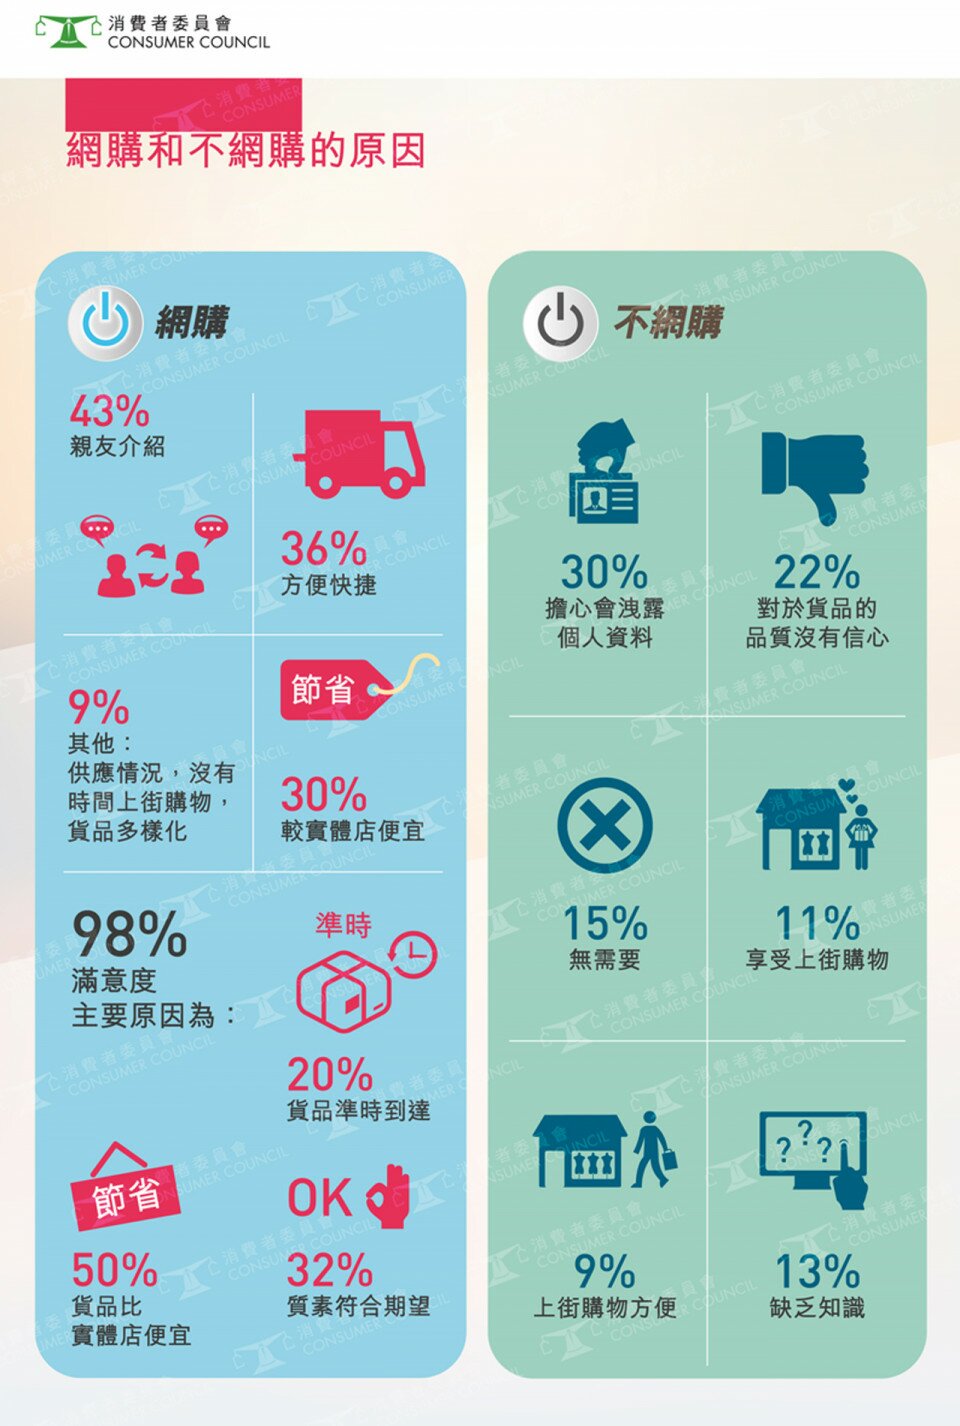 网上消费 – 香港消费者态度、 营商手法及法律保障的研究